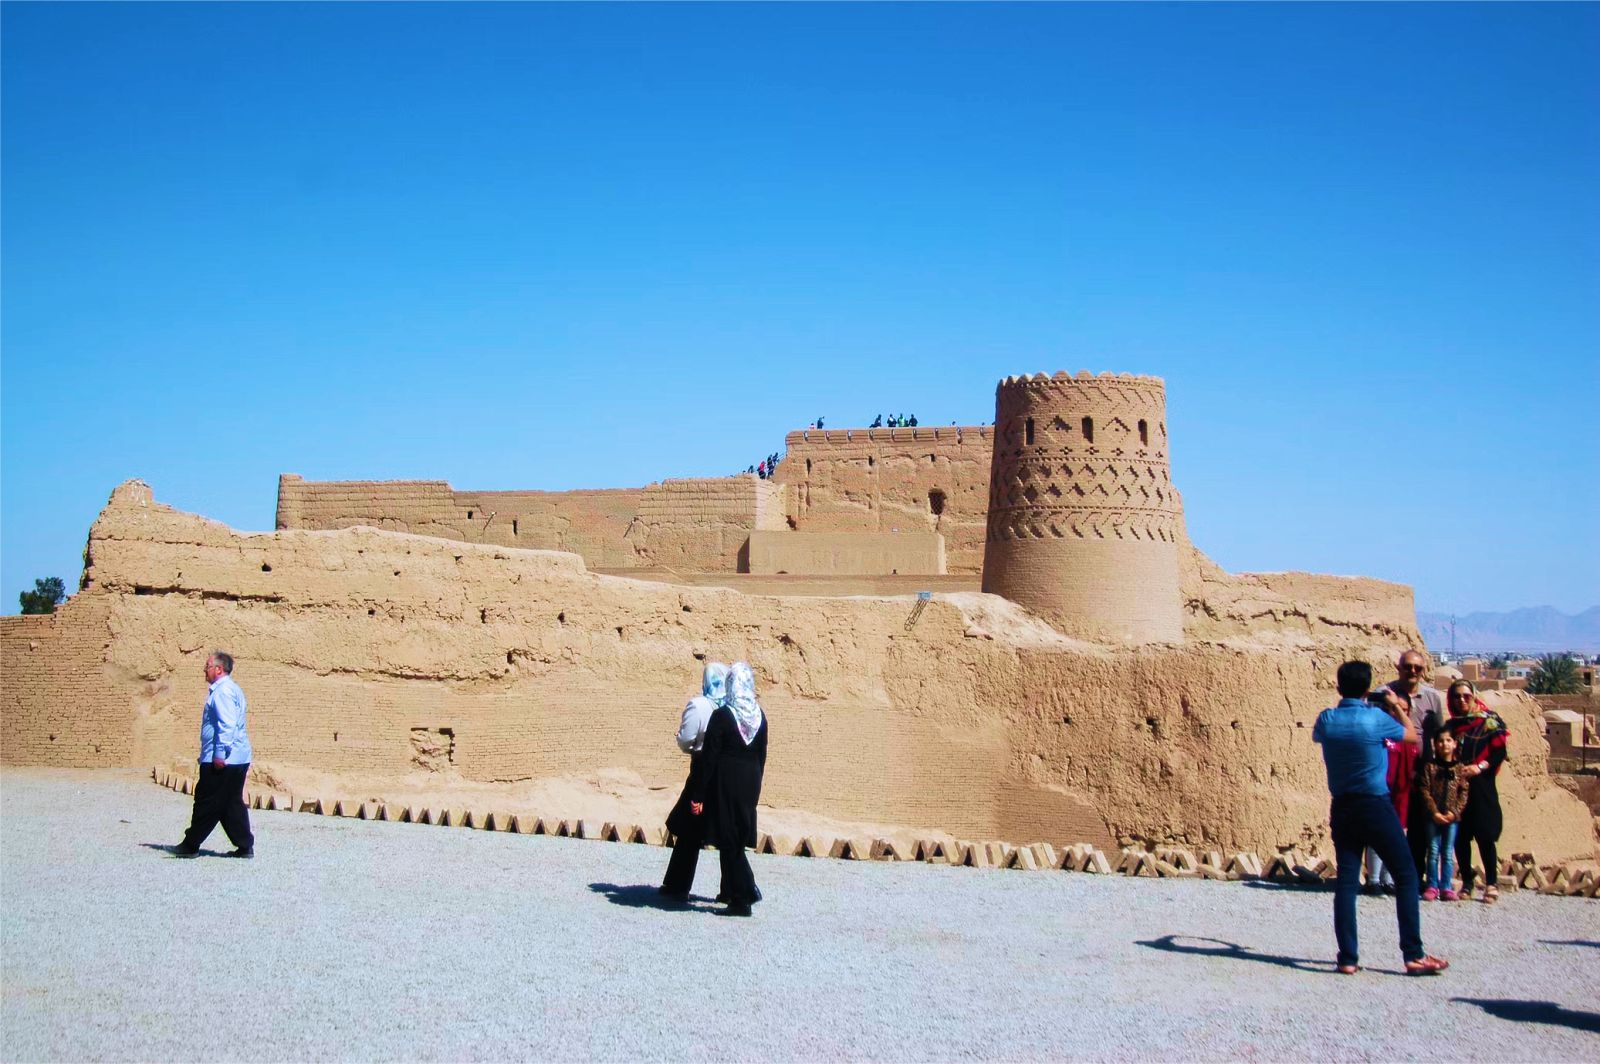  Tháp đón gió - tuyệt tác kiến trúc của thành phố sa mạc Yazd  - Ảnh 6.